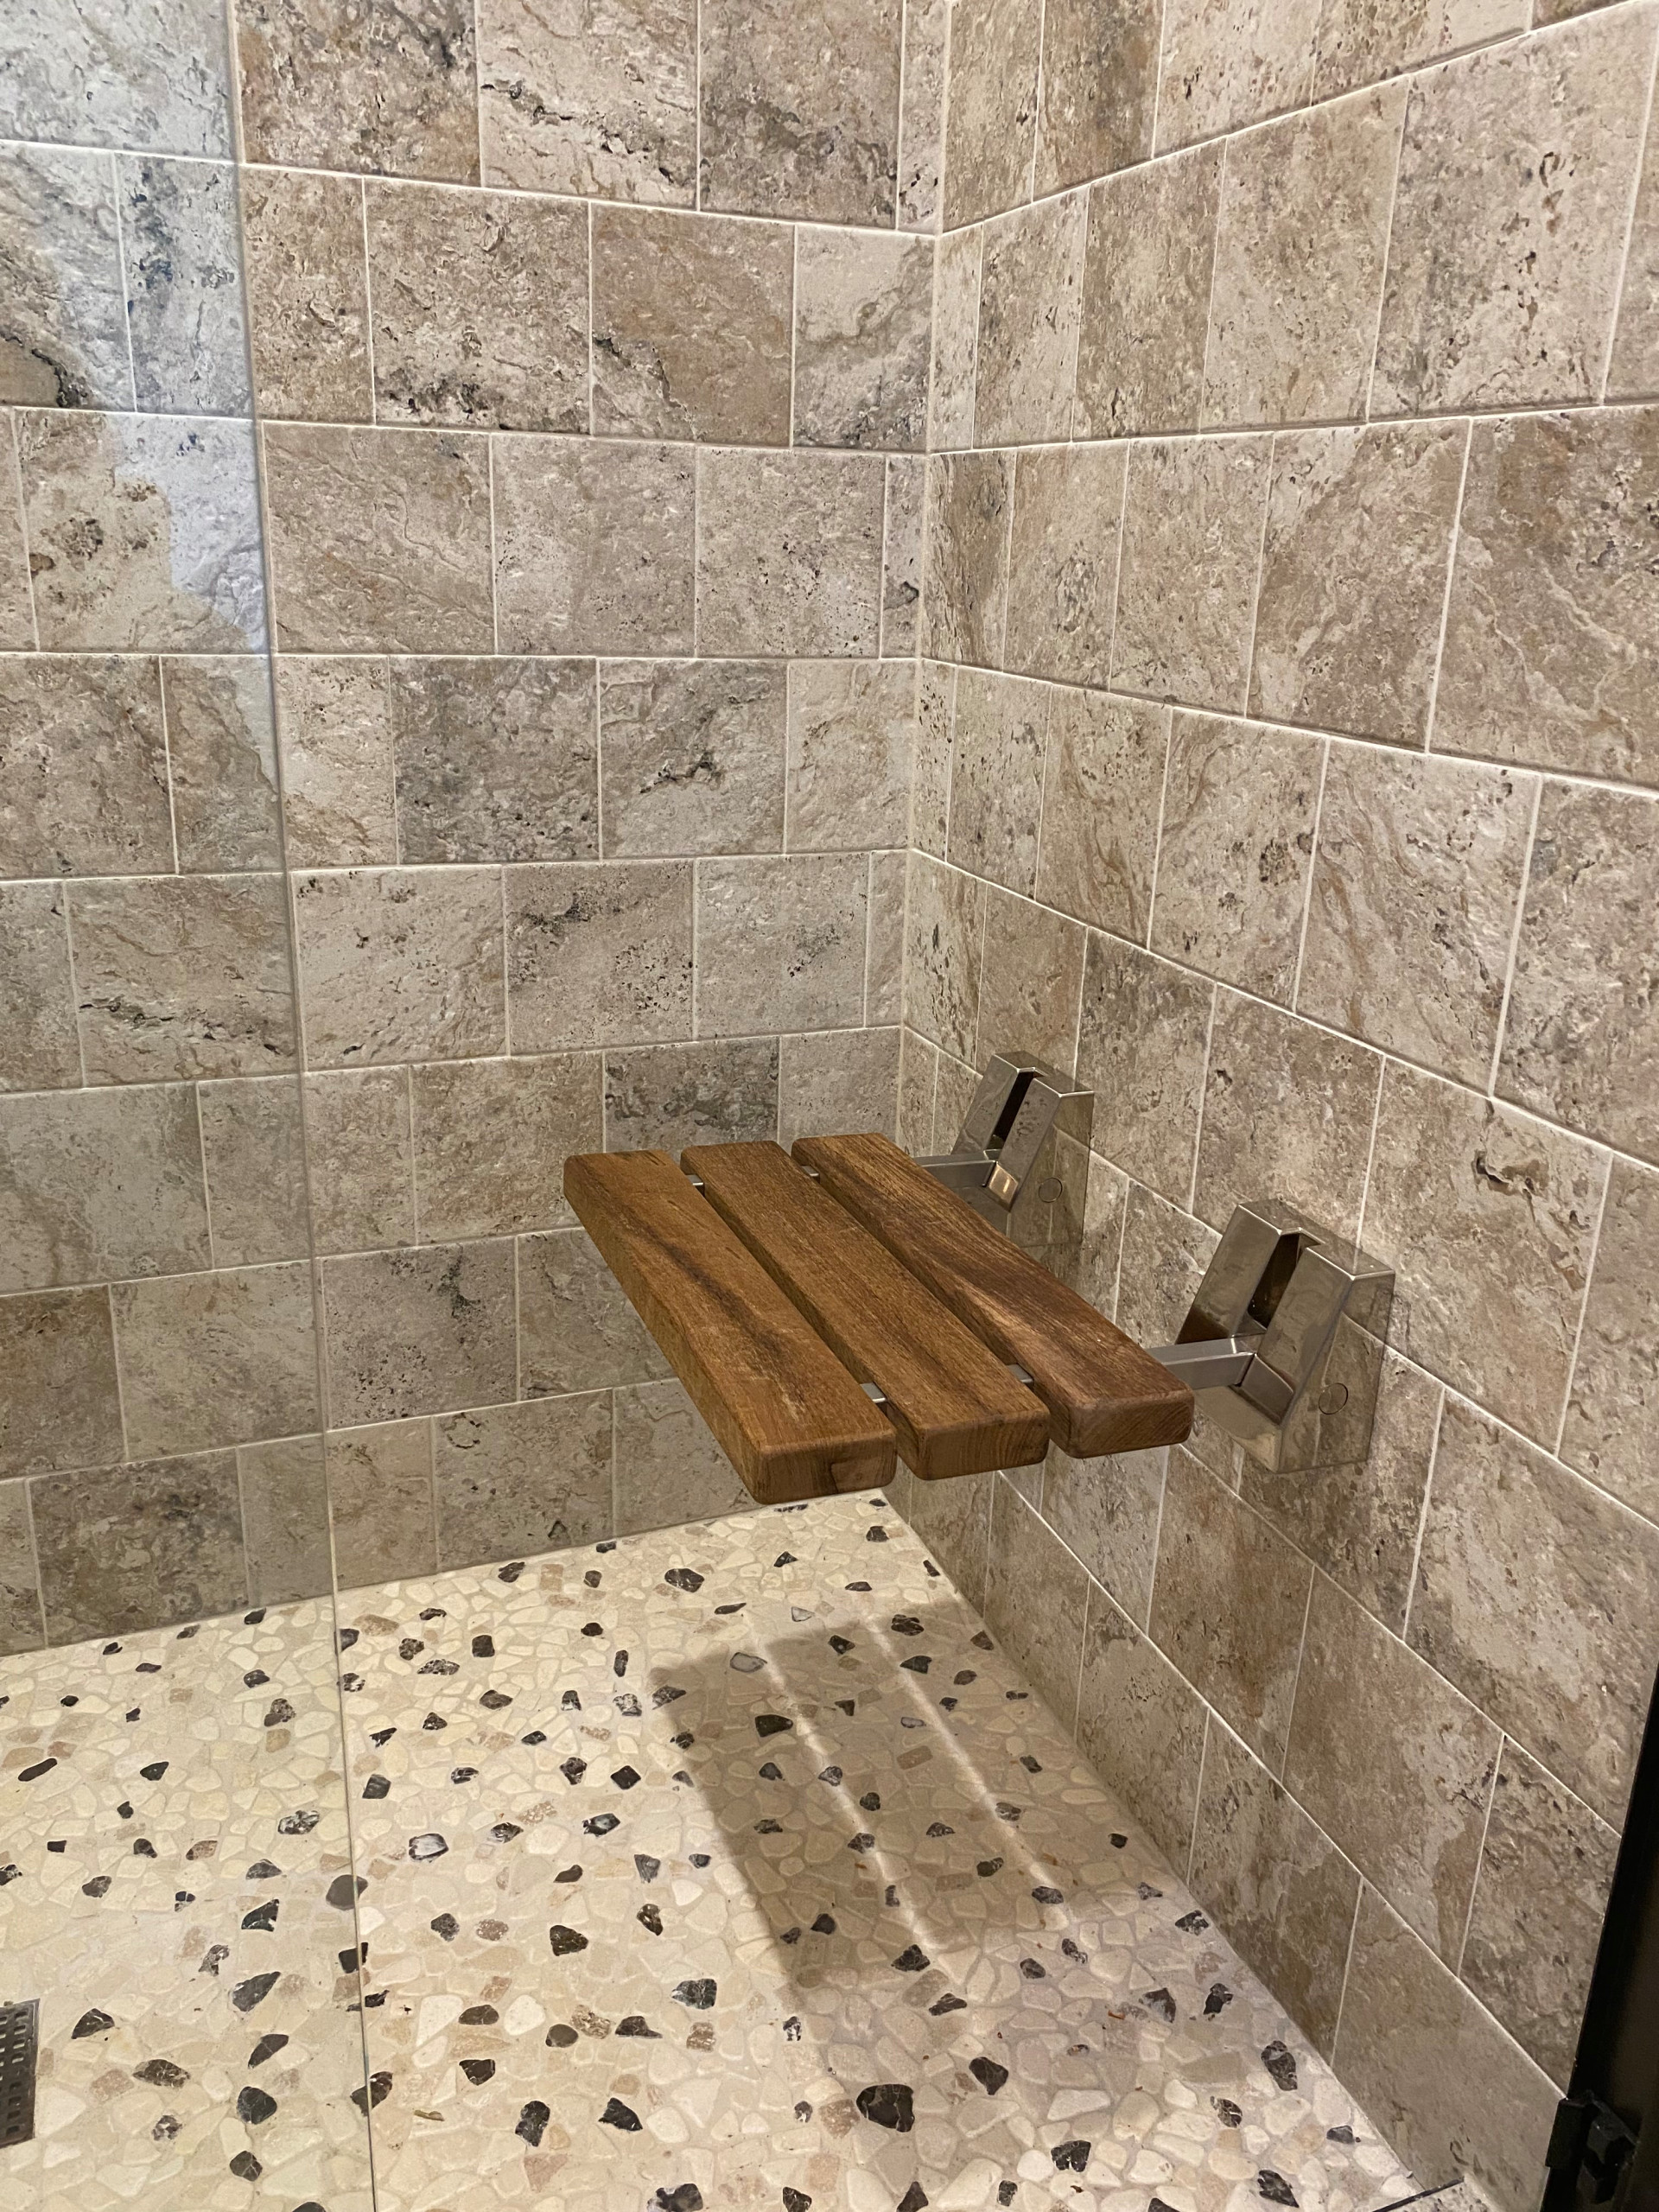 Teak wood foldable shower seat in custom tile shower